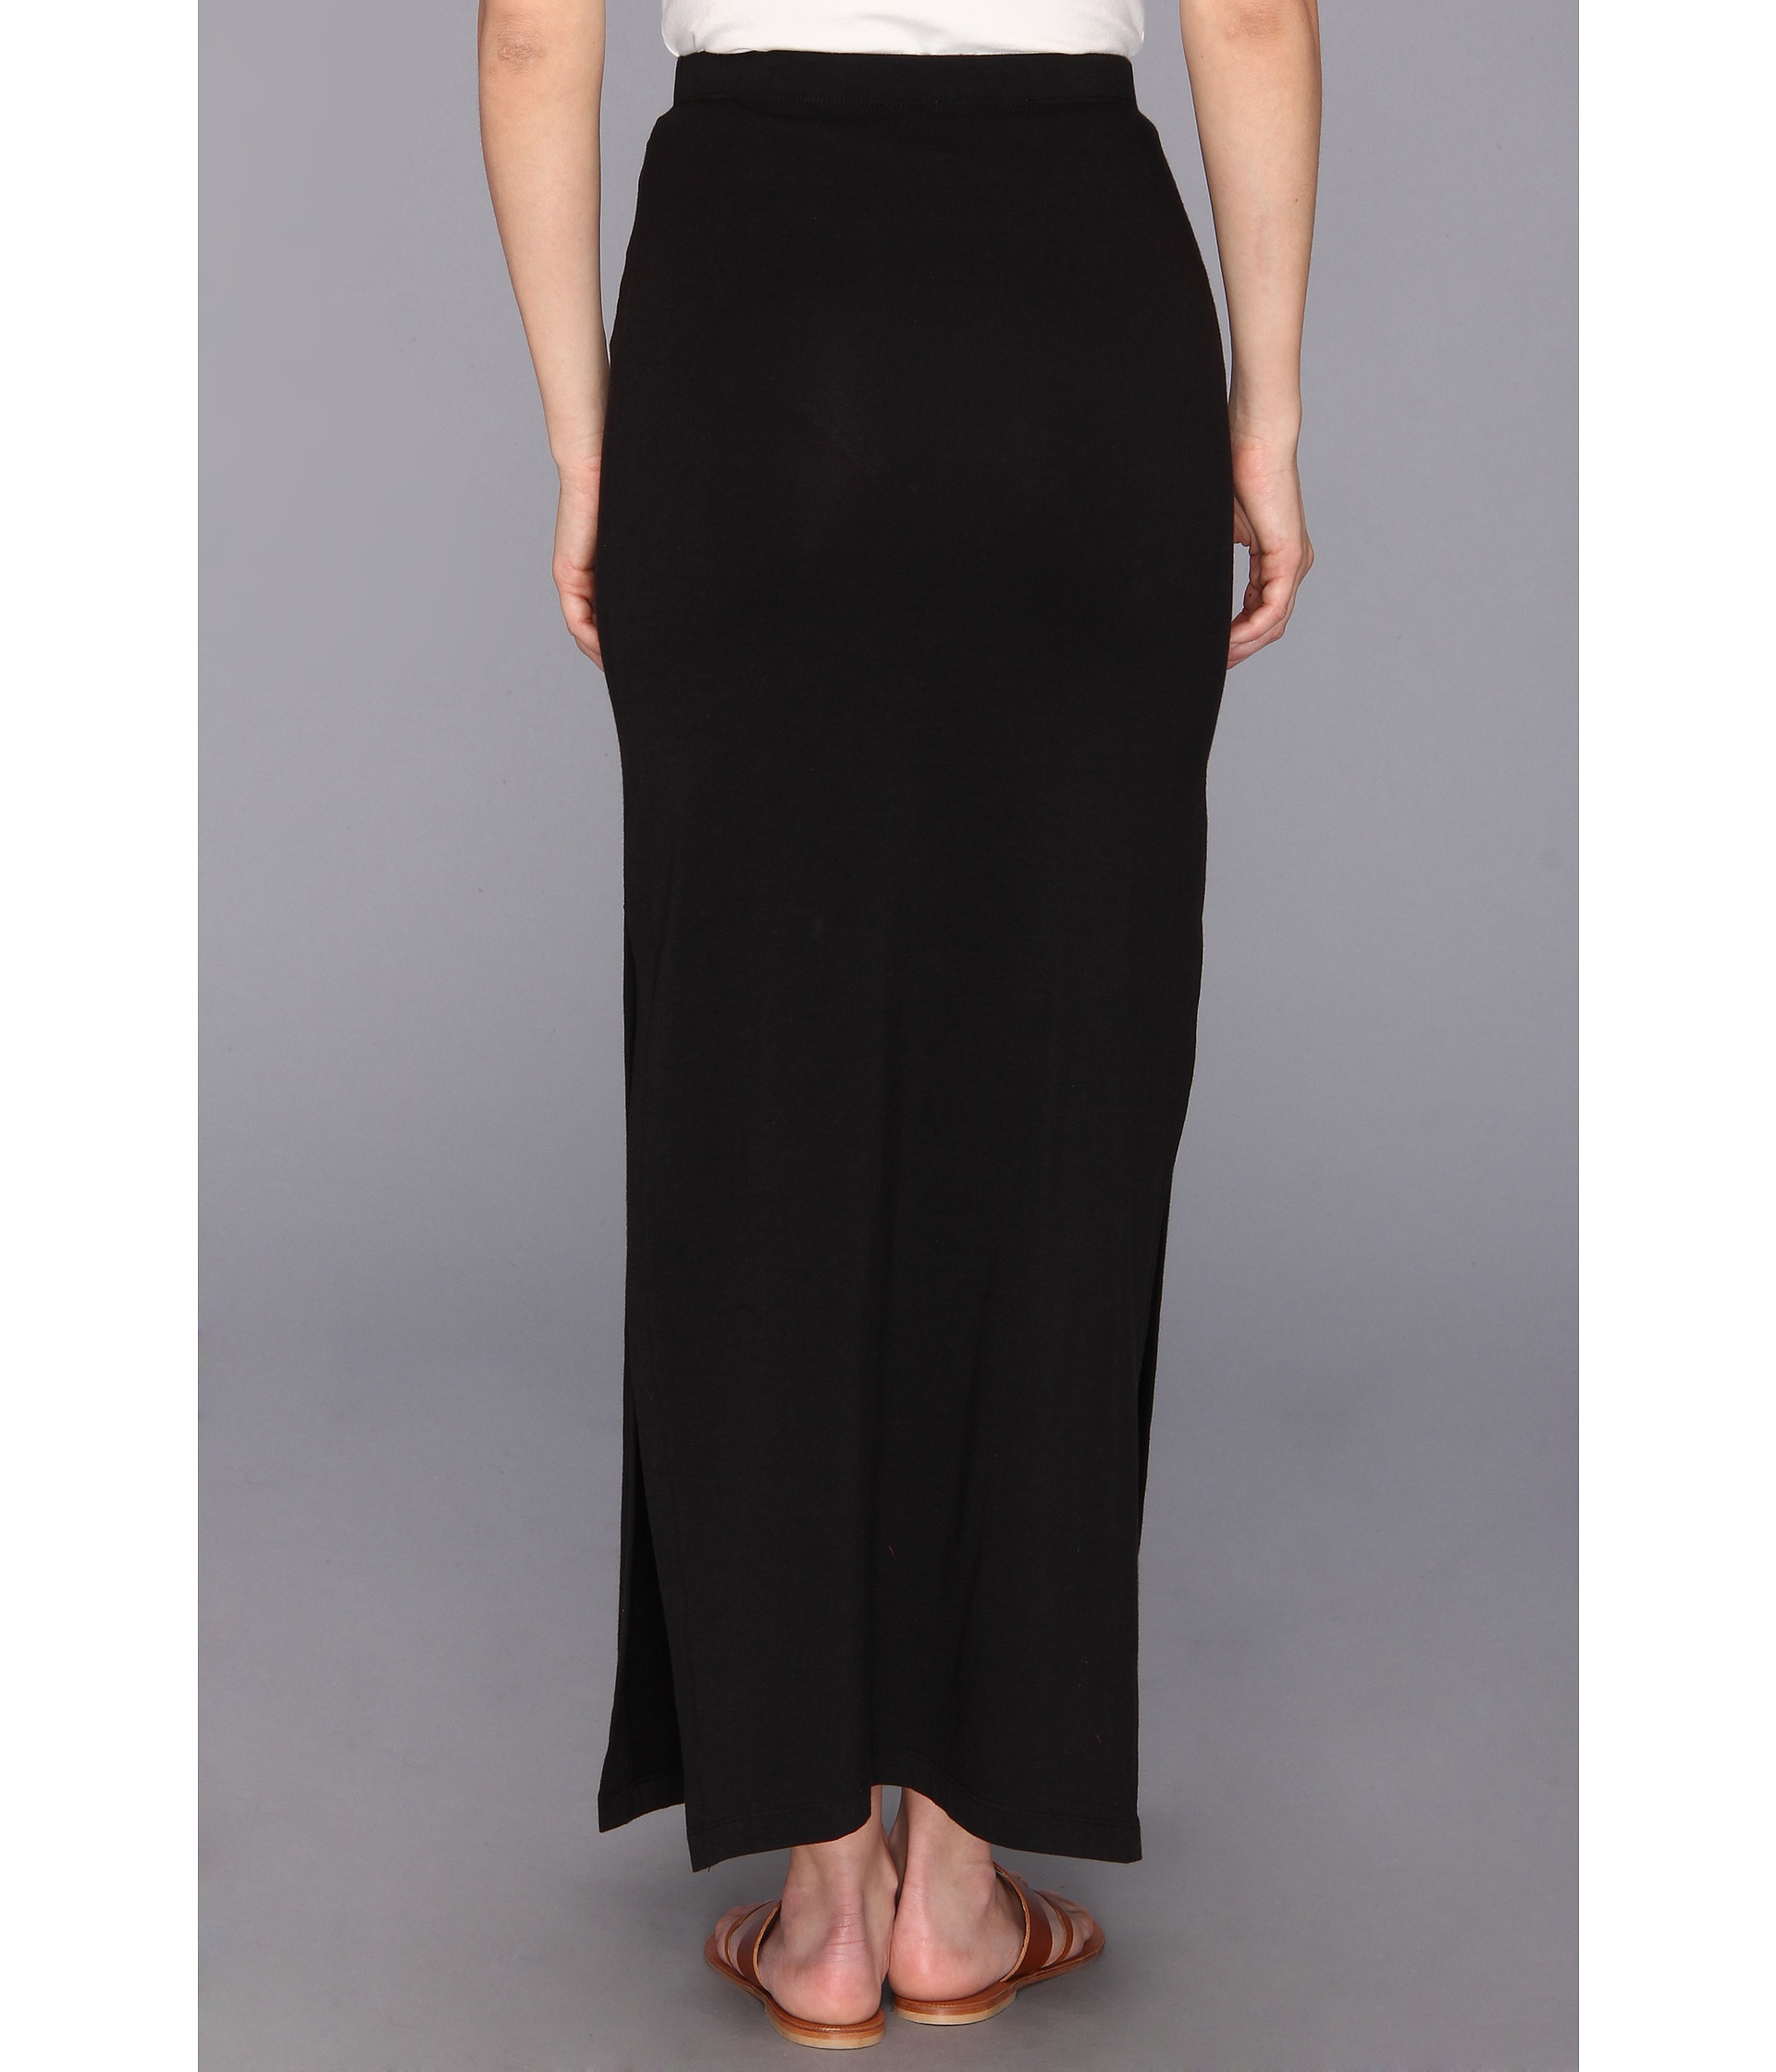 Lyst - Michael Michael Kors Petite Maxi Side Slit Skirt in Black